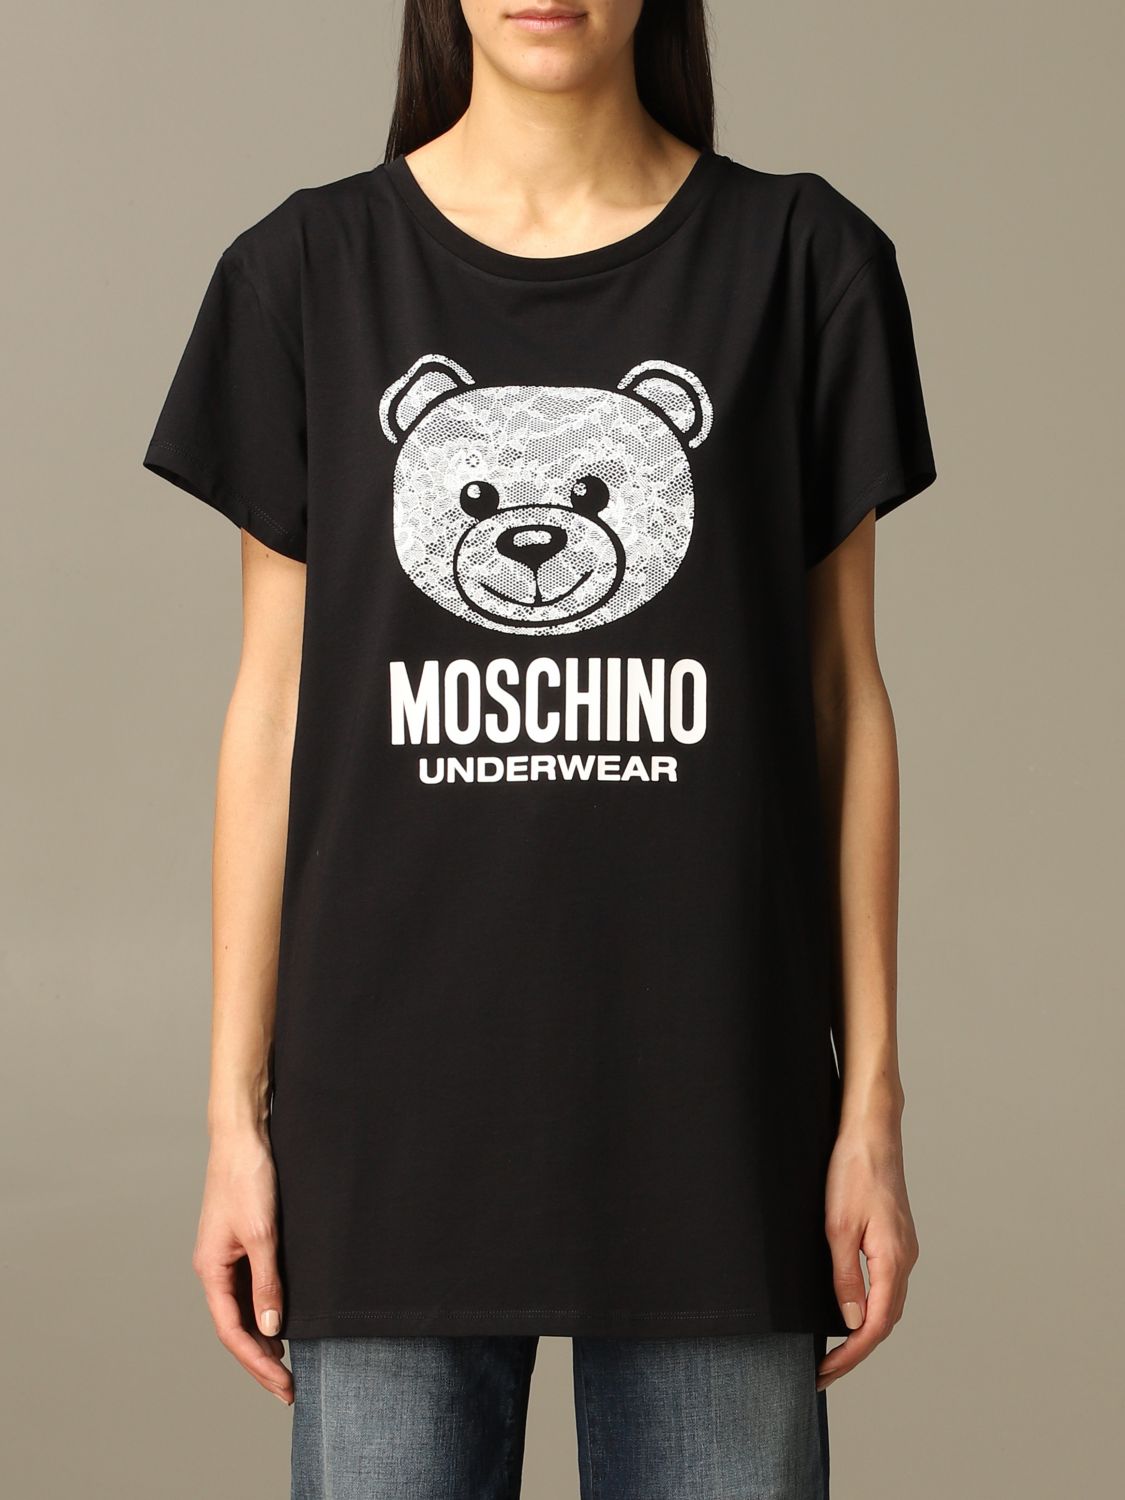 Moschino Underwear Outlet: T-shirt women | T-Shirt Moschino Underwear ...